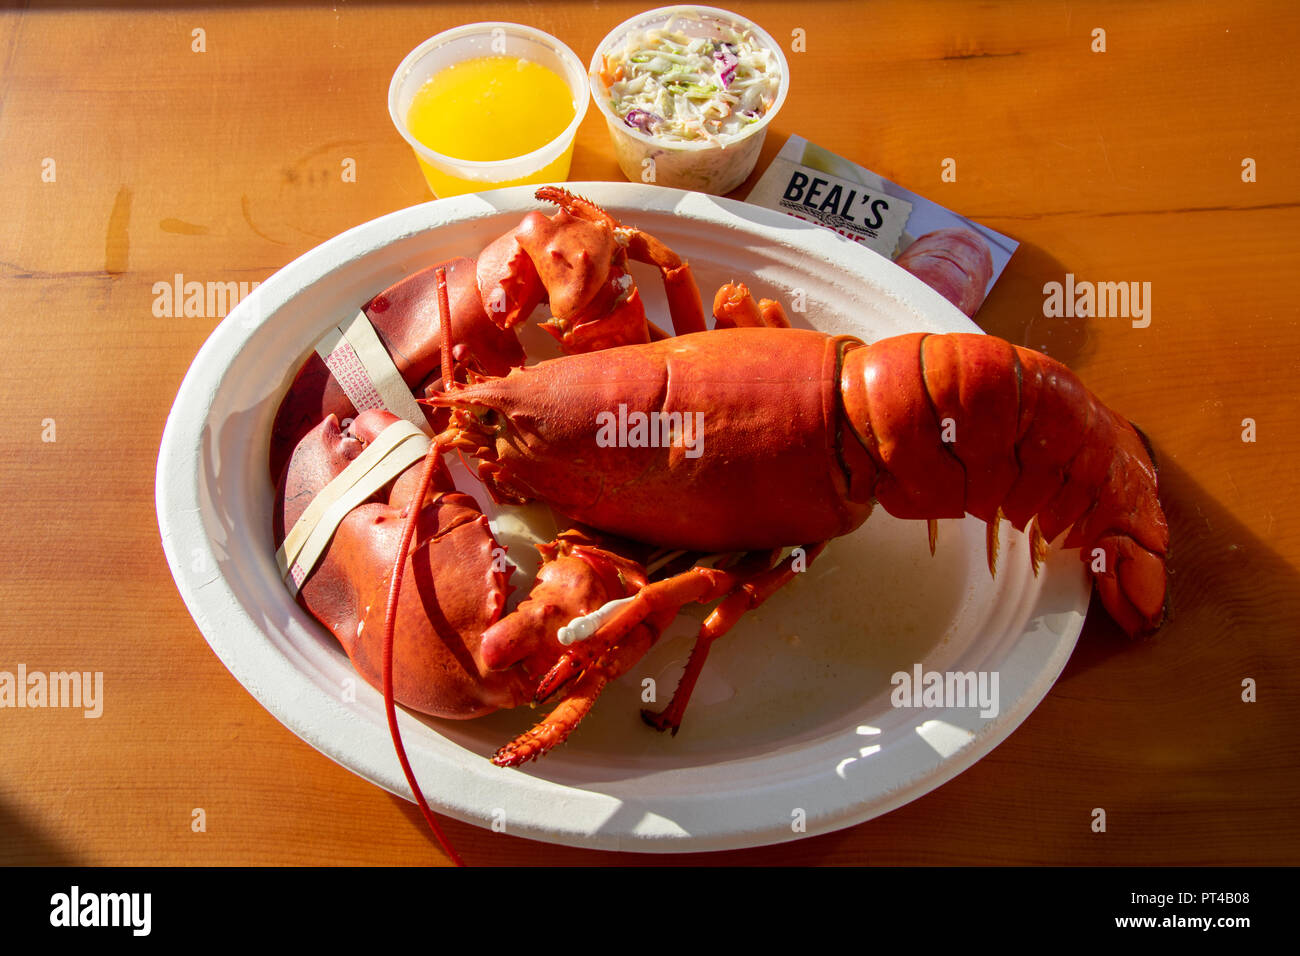 Beal aragosta del ristorante Pier, Southwest Harbor, Maine, Stati Uniti d'America Foto Stock